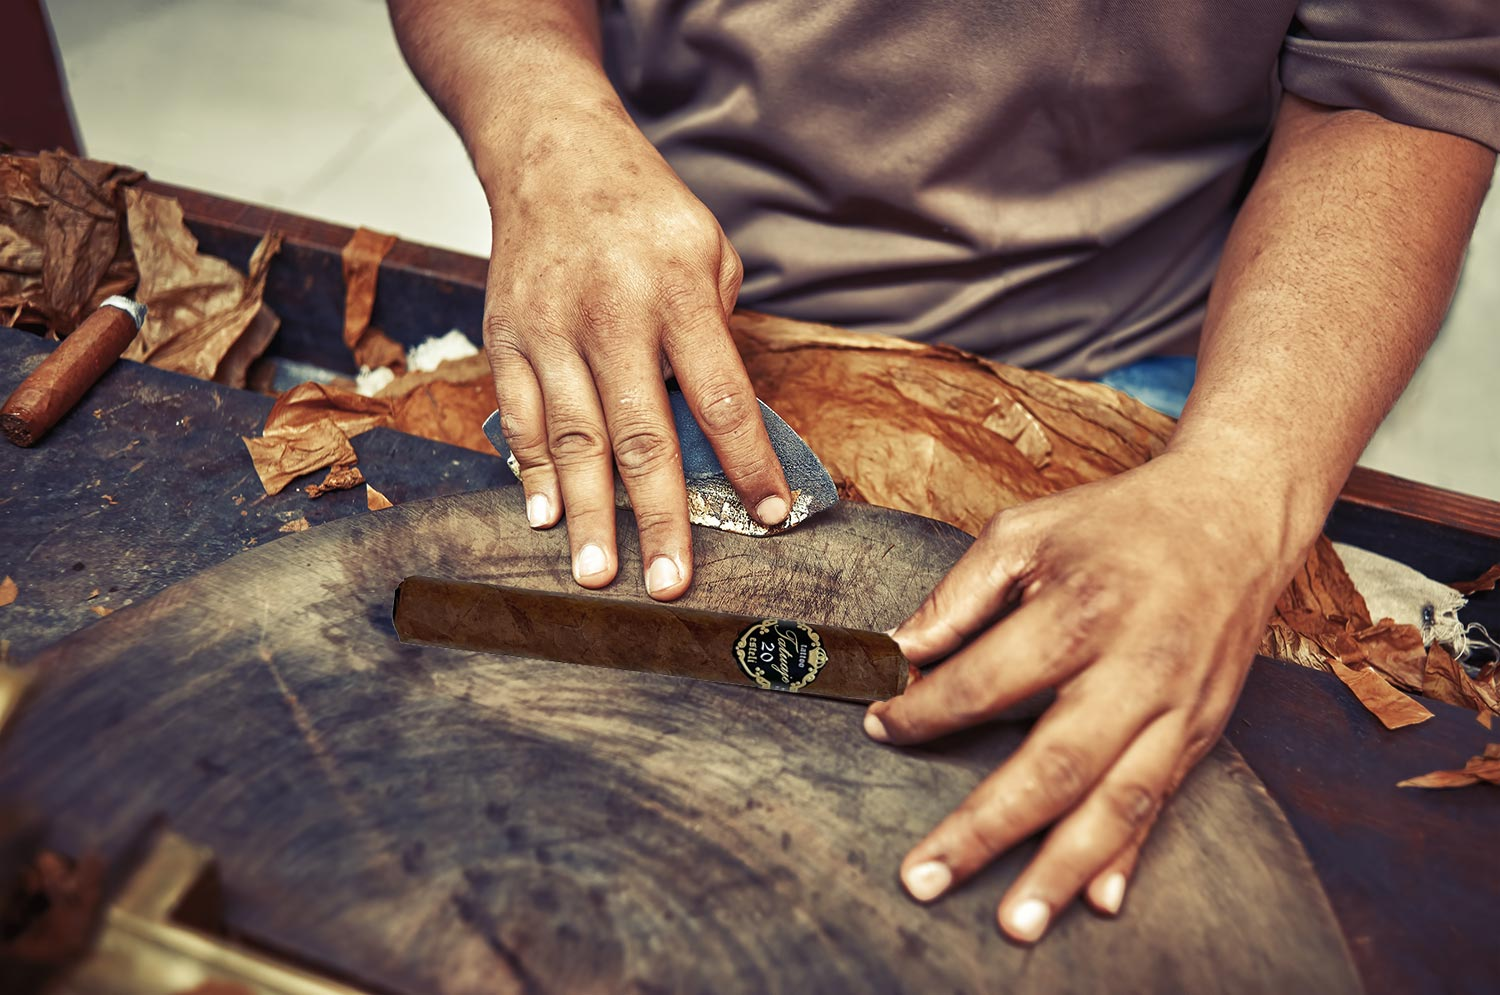 A factory worker rolling a Tatuaje 20th Grande Merveille cigar